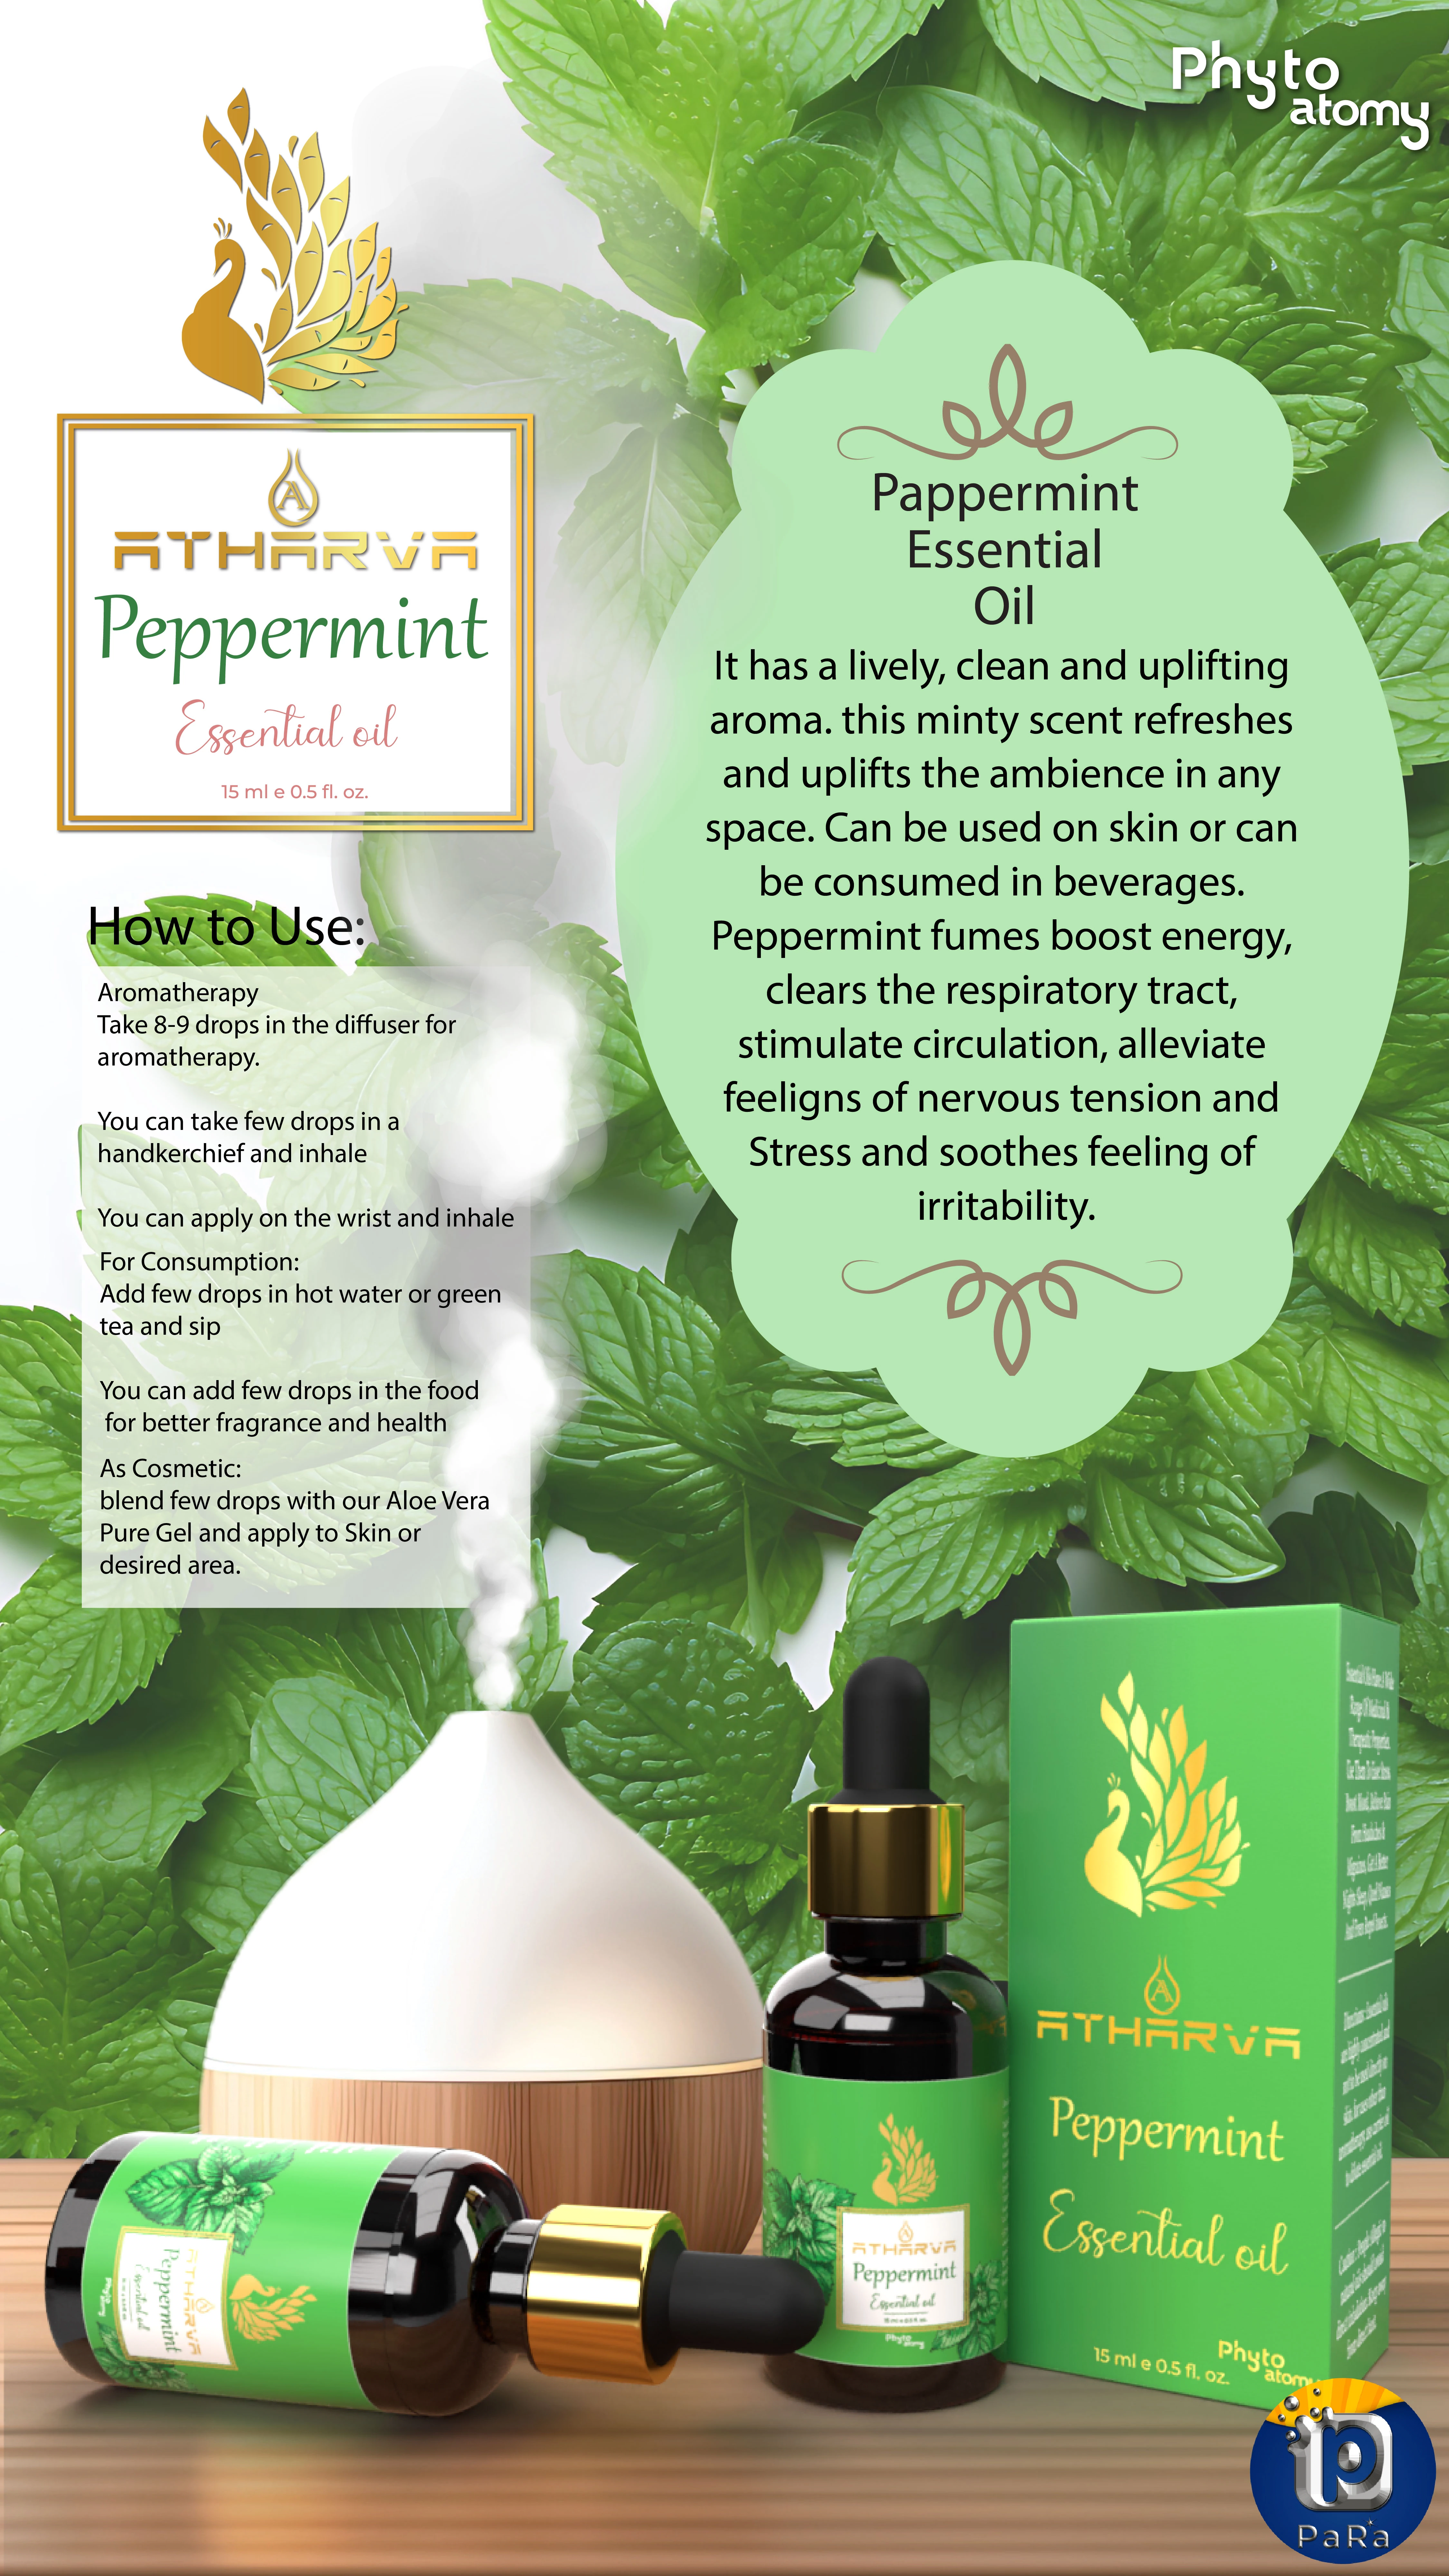 RBV B2B Atharva Peppermint Essential Oil (15ml)-12 Pcs.